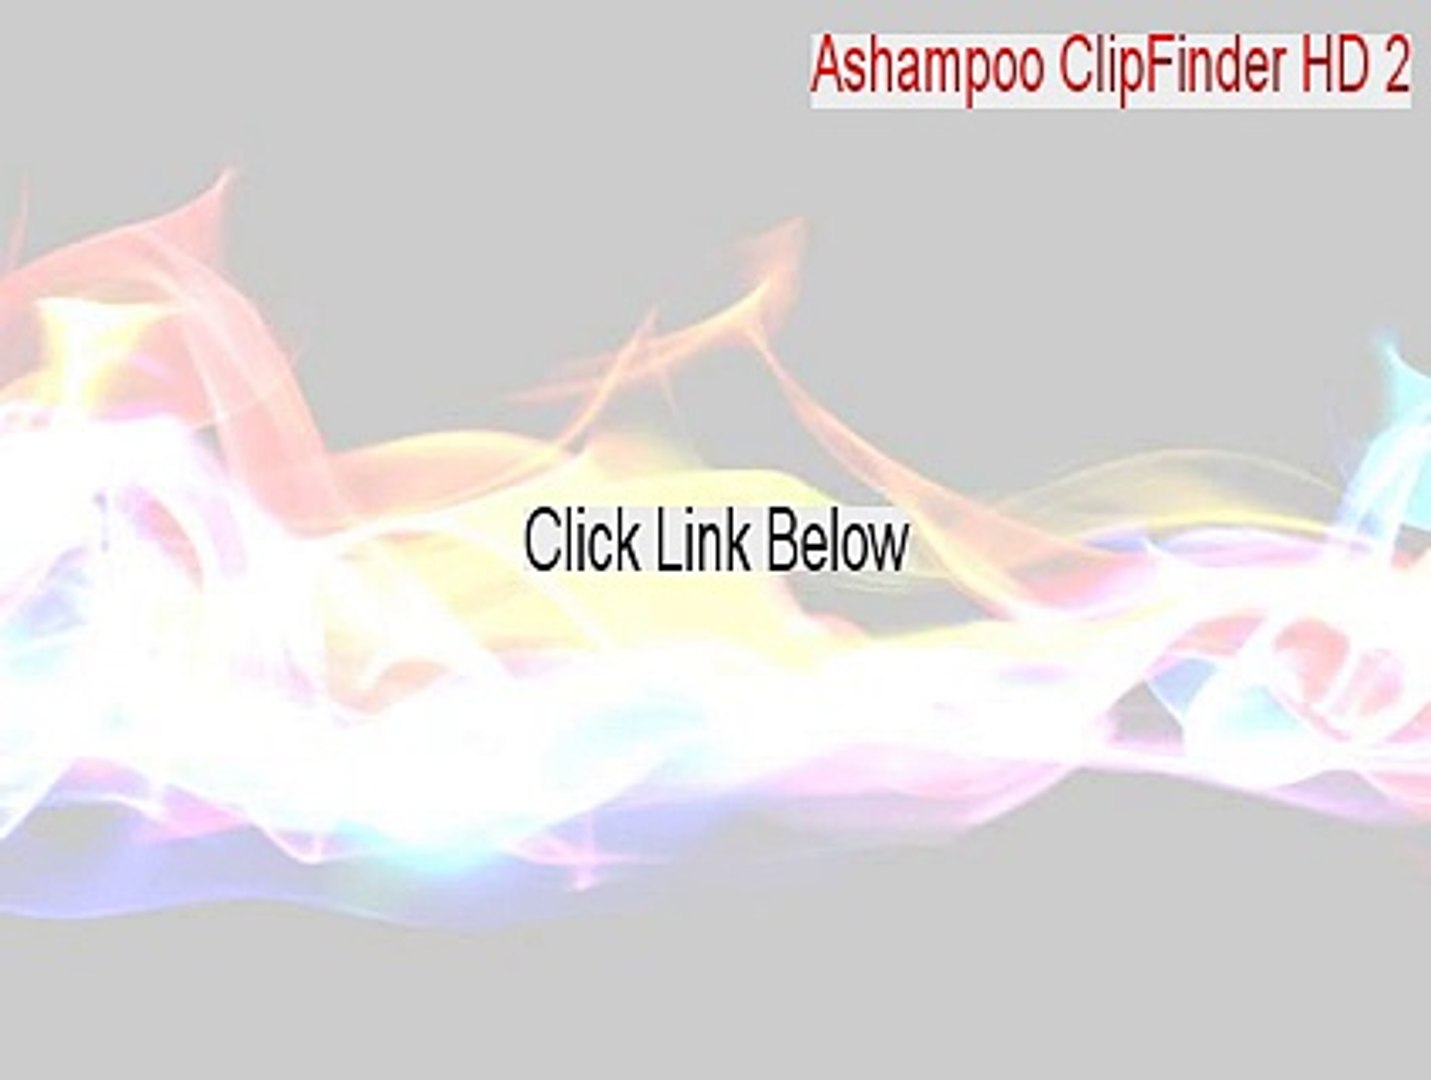 Ashampoo ClipFinder HD 2 Keygen - ashampoo clipfinder hd 2 key - video  Dailymotion